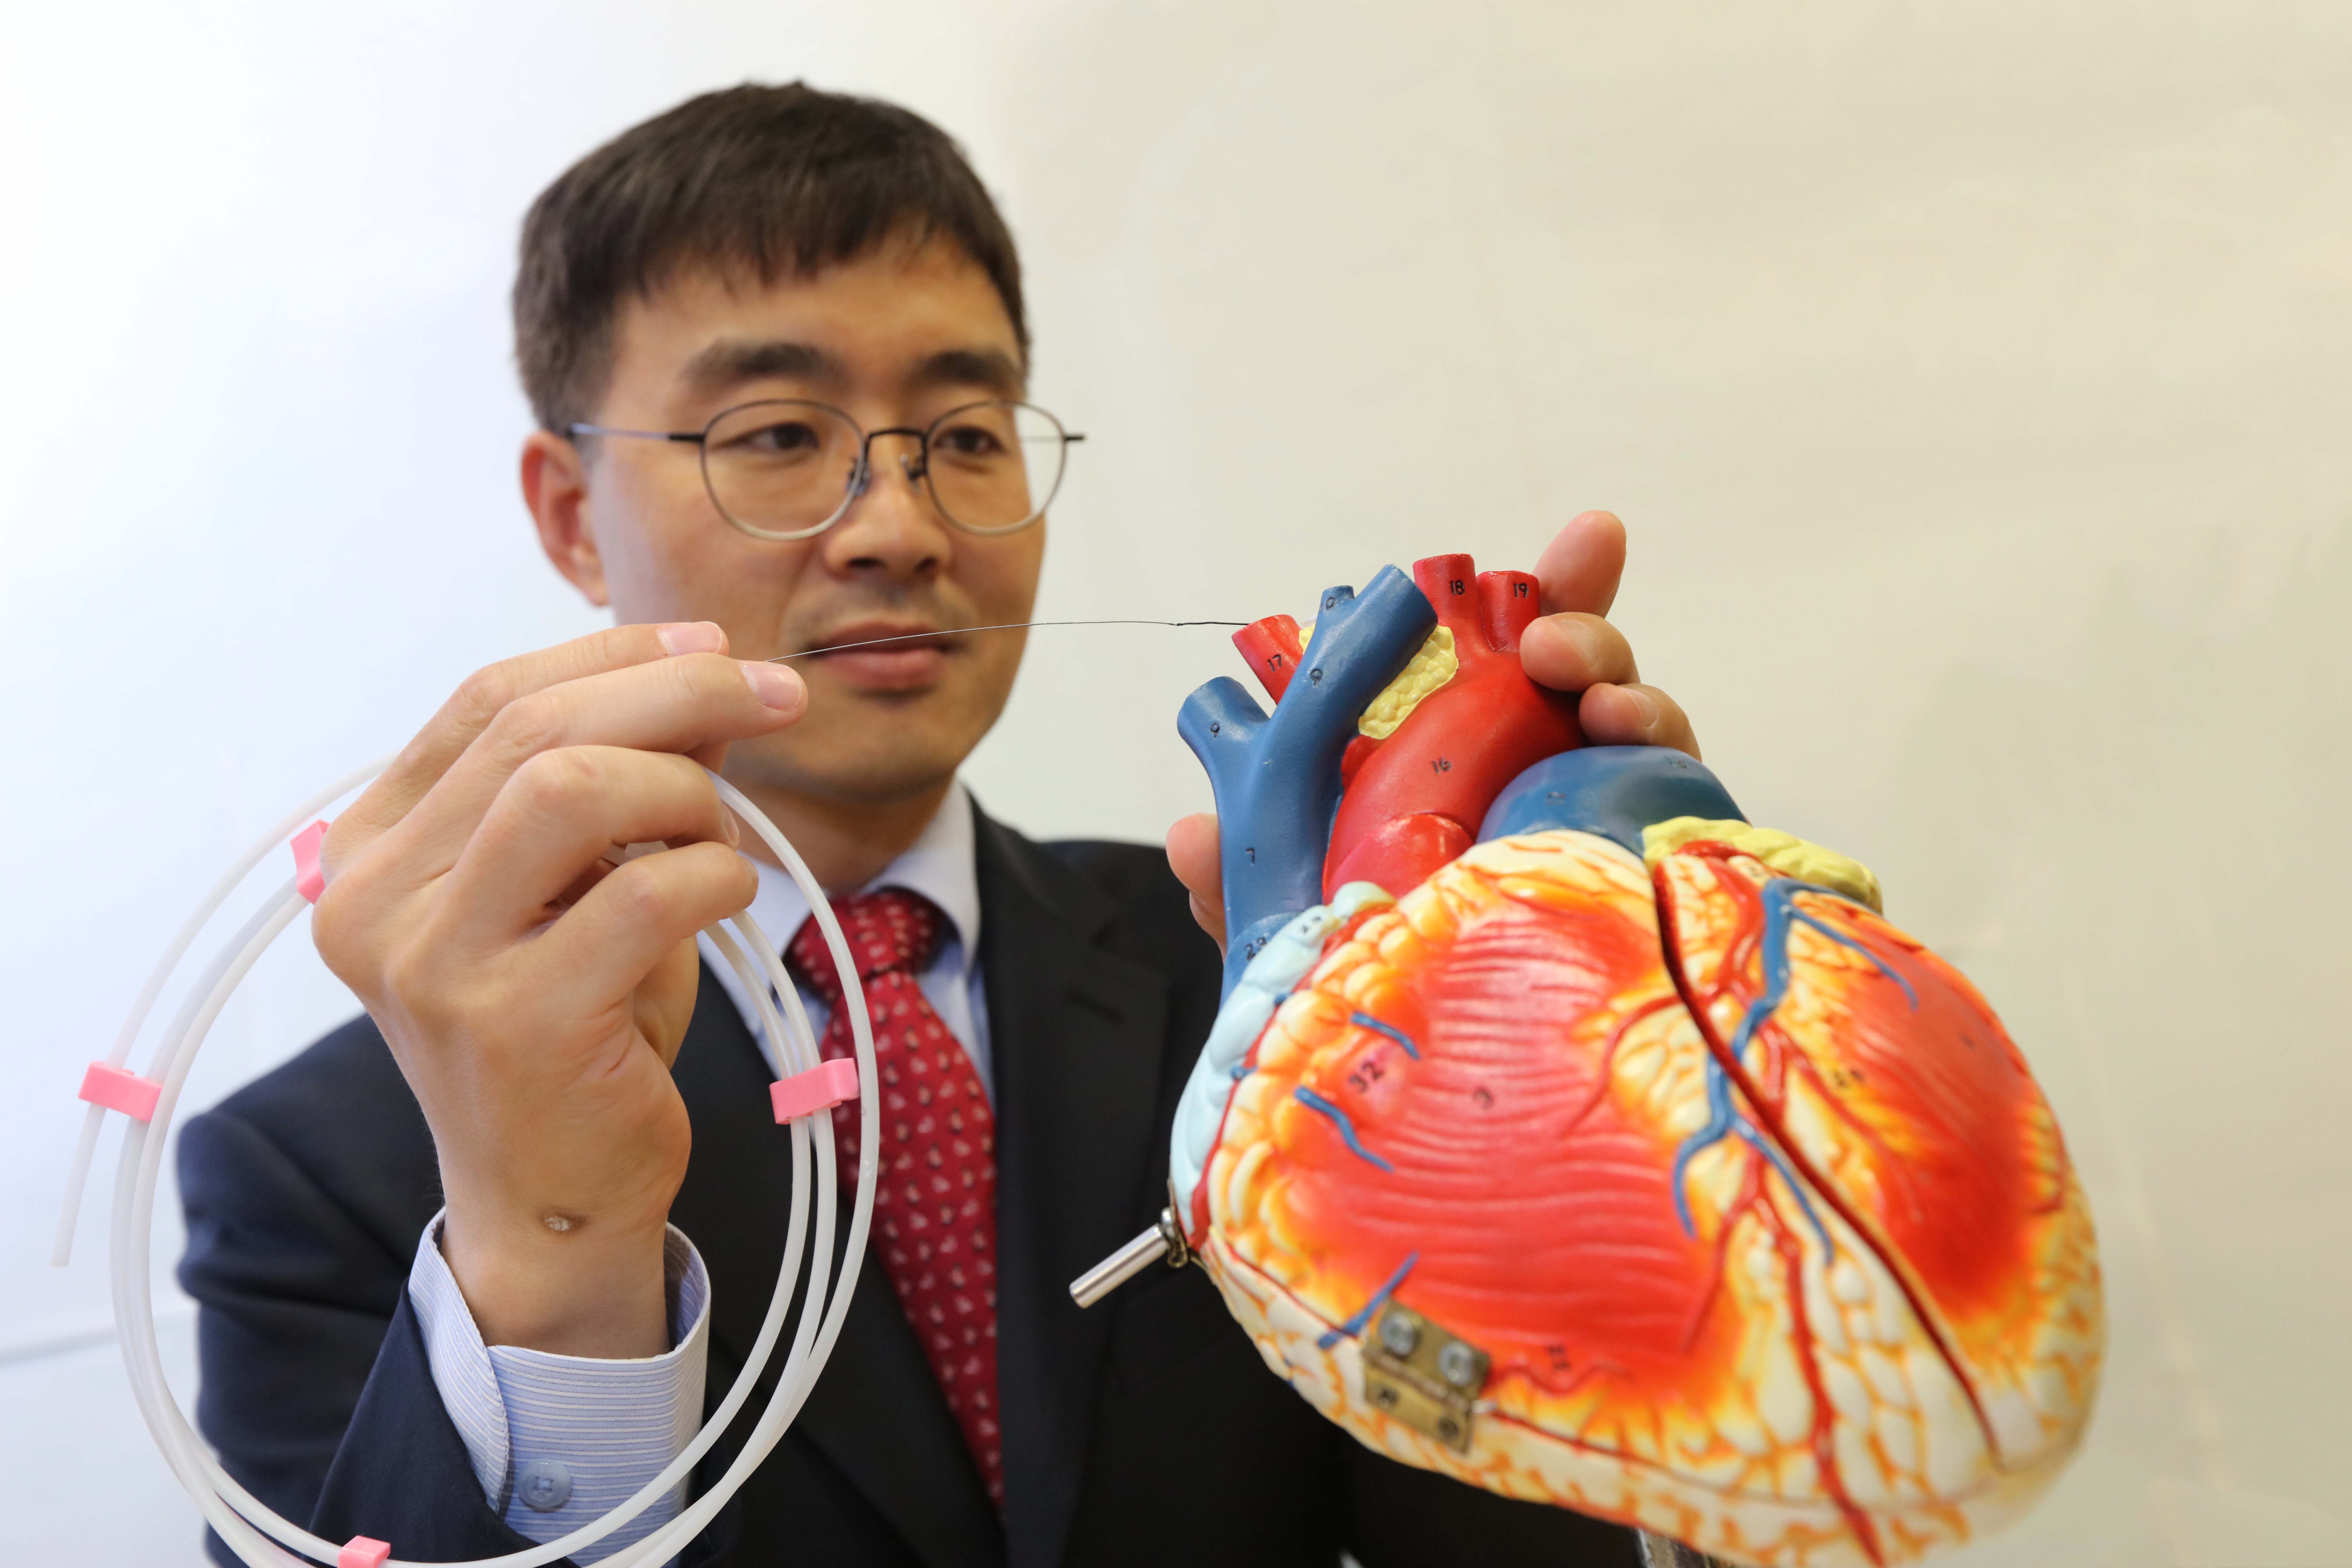  崔弘洙教授表示「導絲微型機器人」或能應用於俗稱「通波仔」的冠狀動脈介入手術。